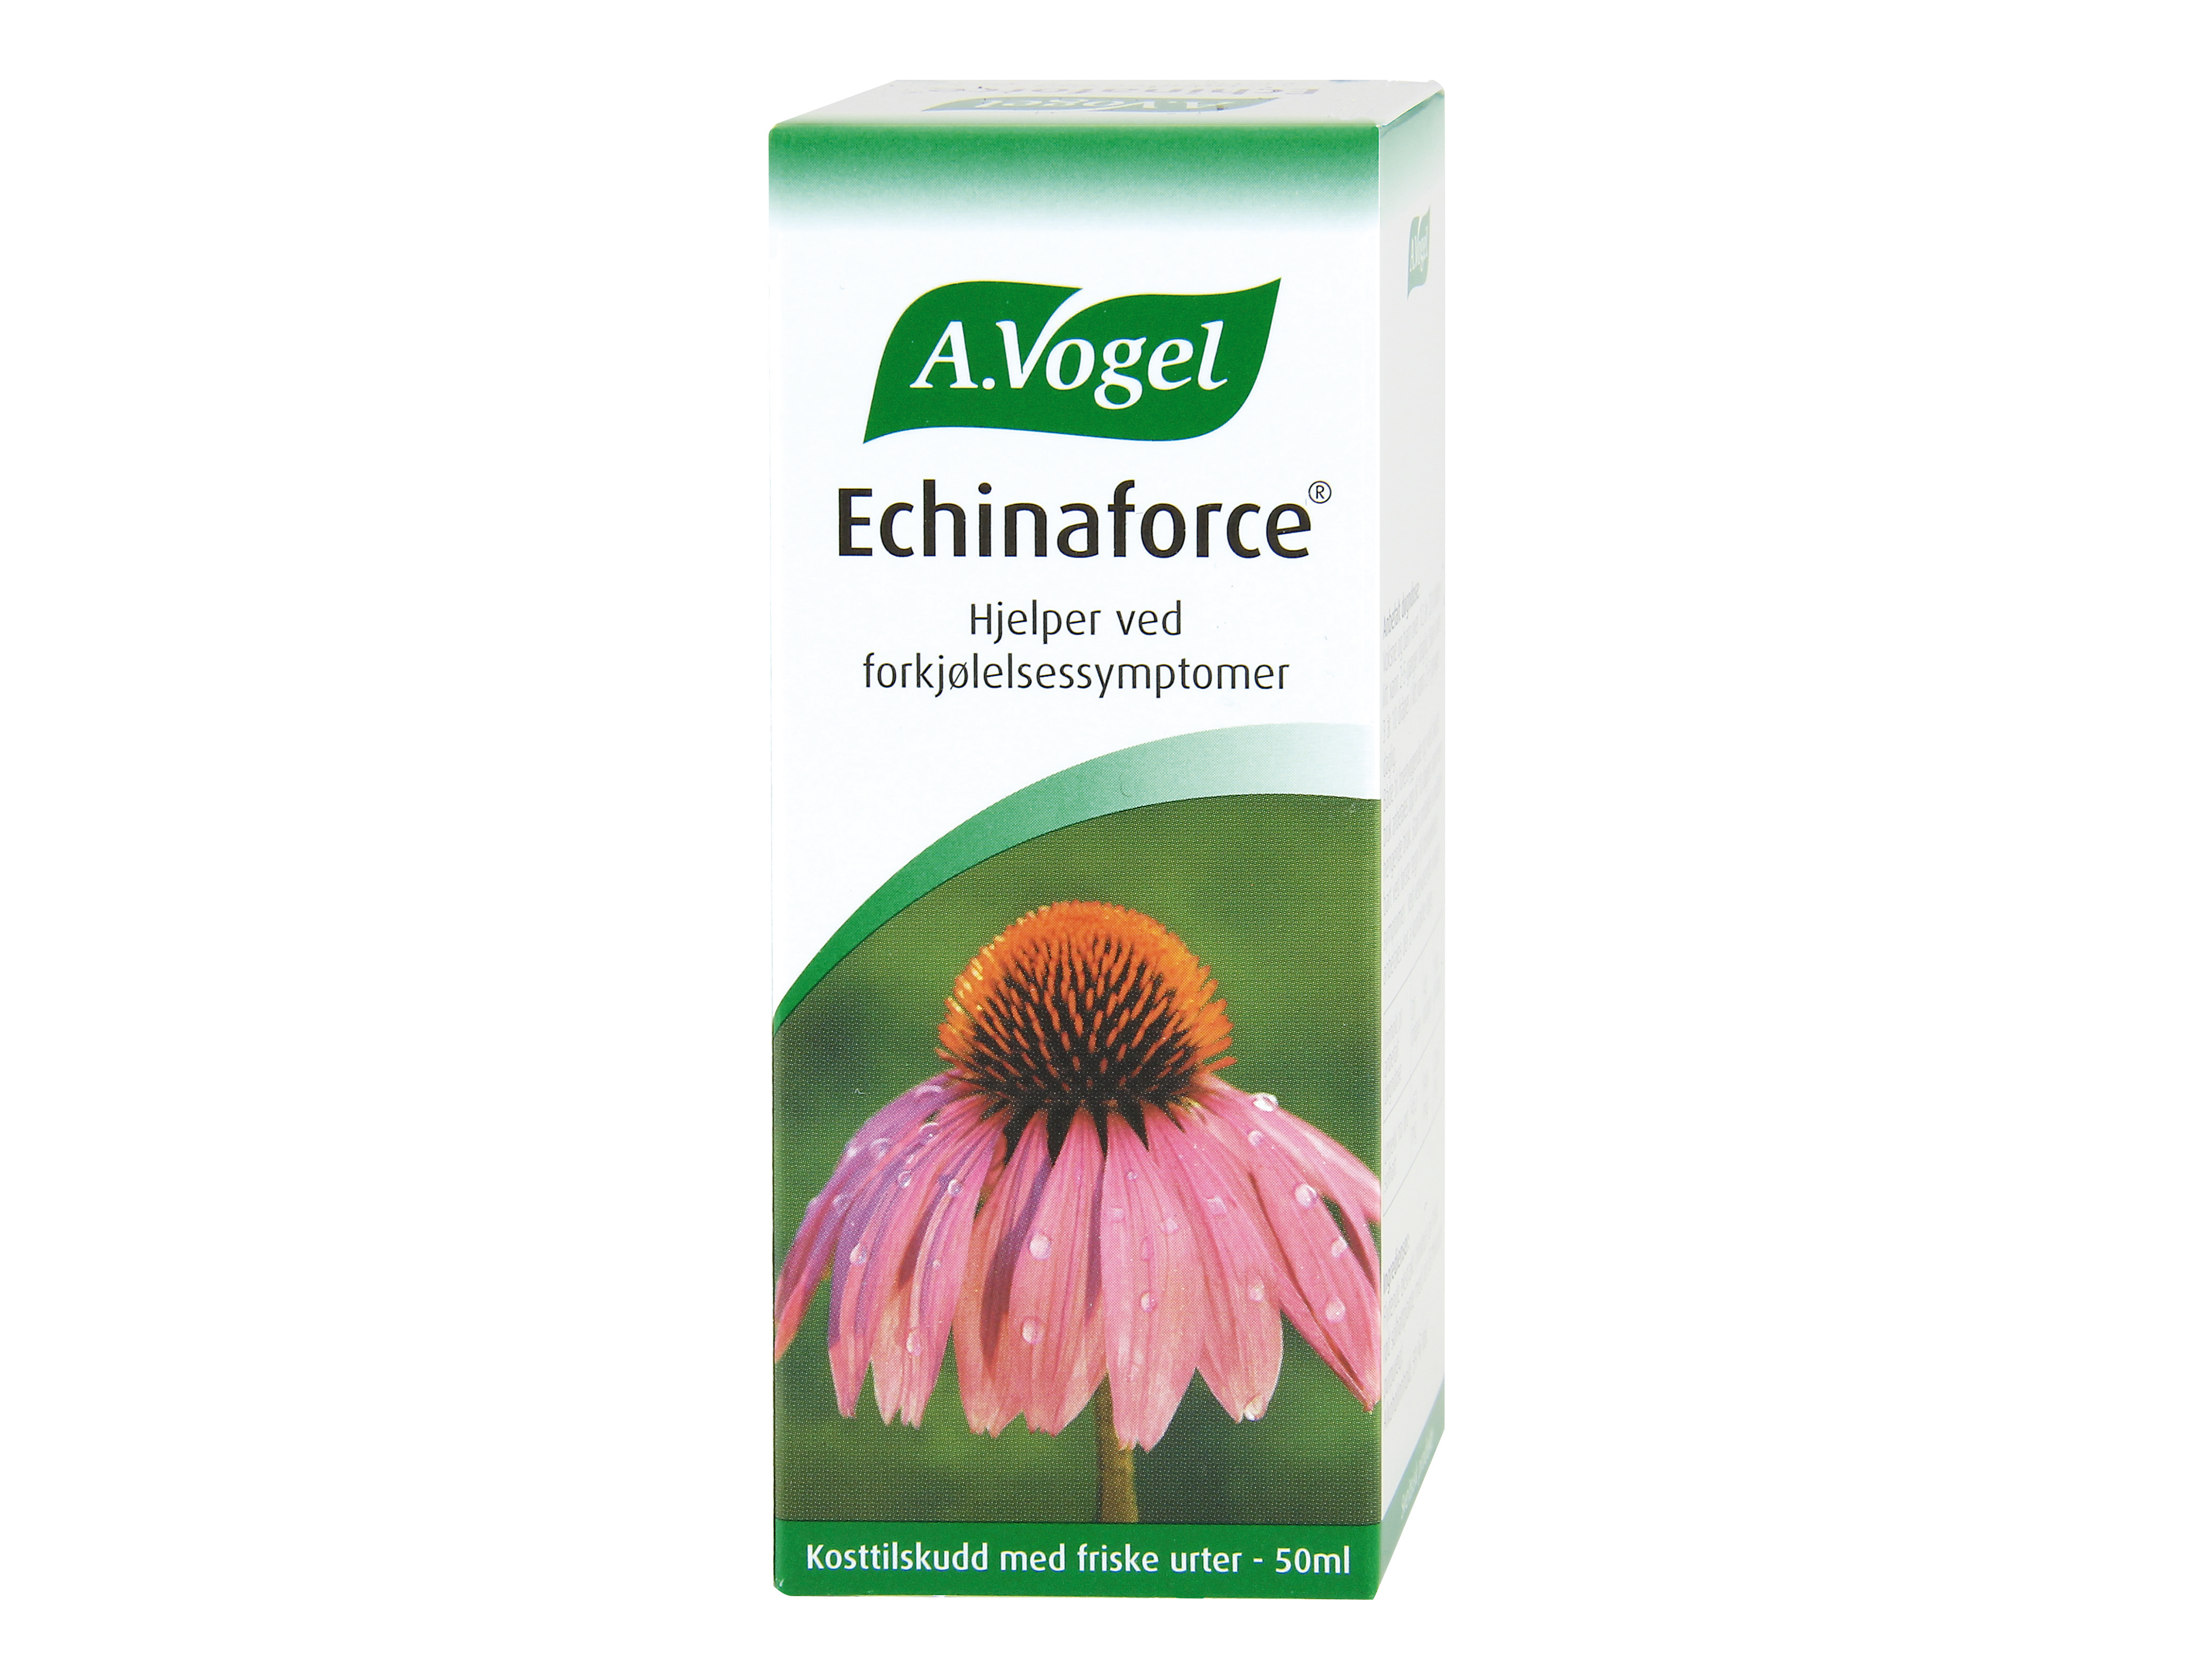 A.Vogel Echinaforce oppløsning, 50 ml